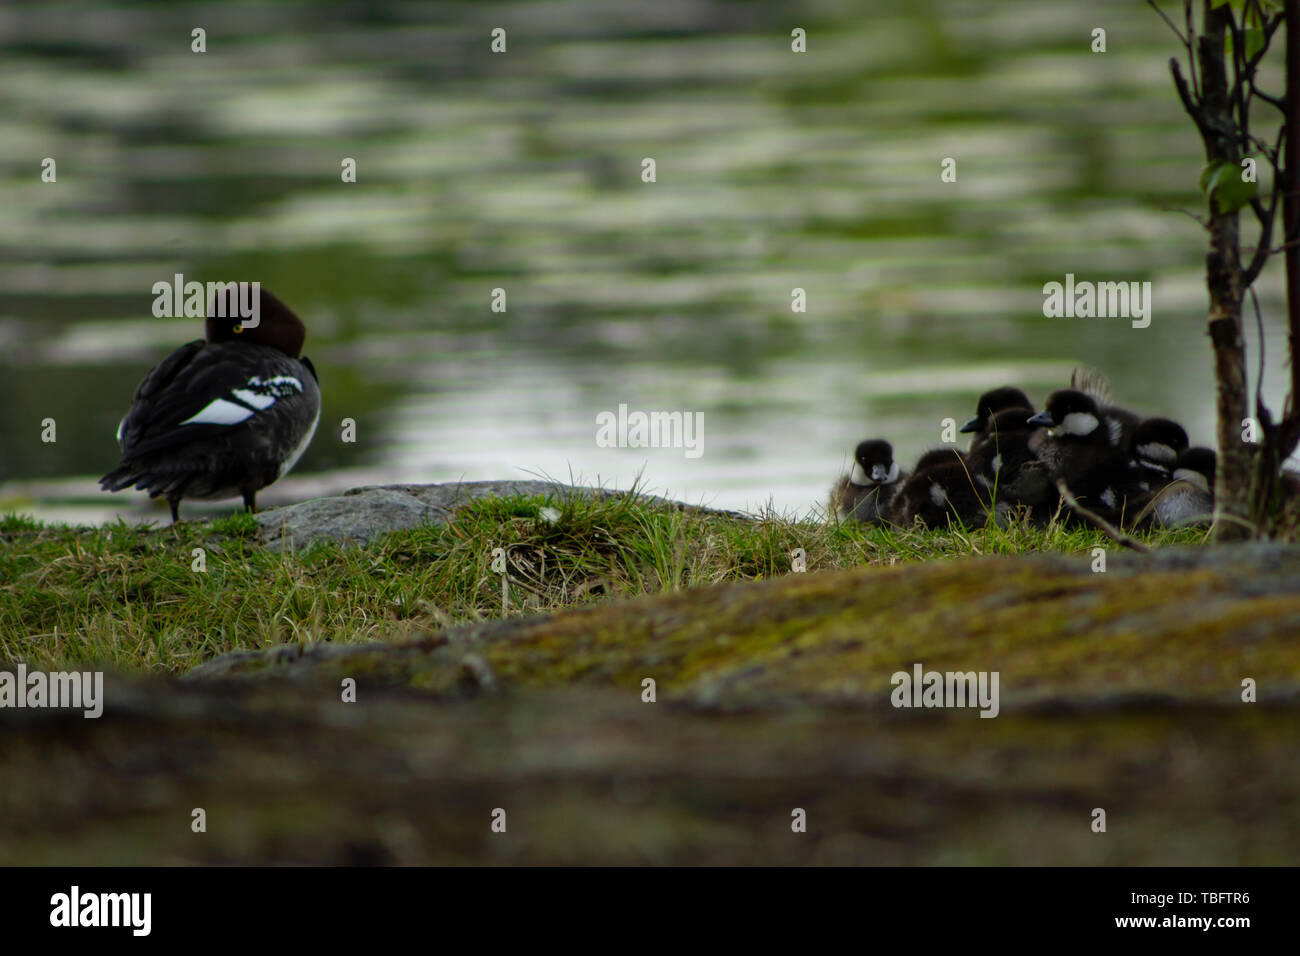 Schellente Mutter halten ein Auge offen, während ihre Küken zusammen in einem Haufen mit einem verschwommenen See im Hintergrund liegen Stockfoto